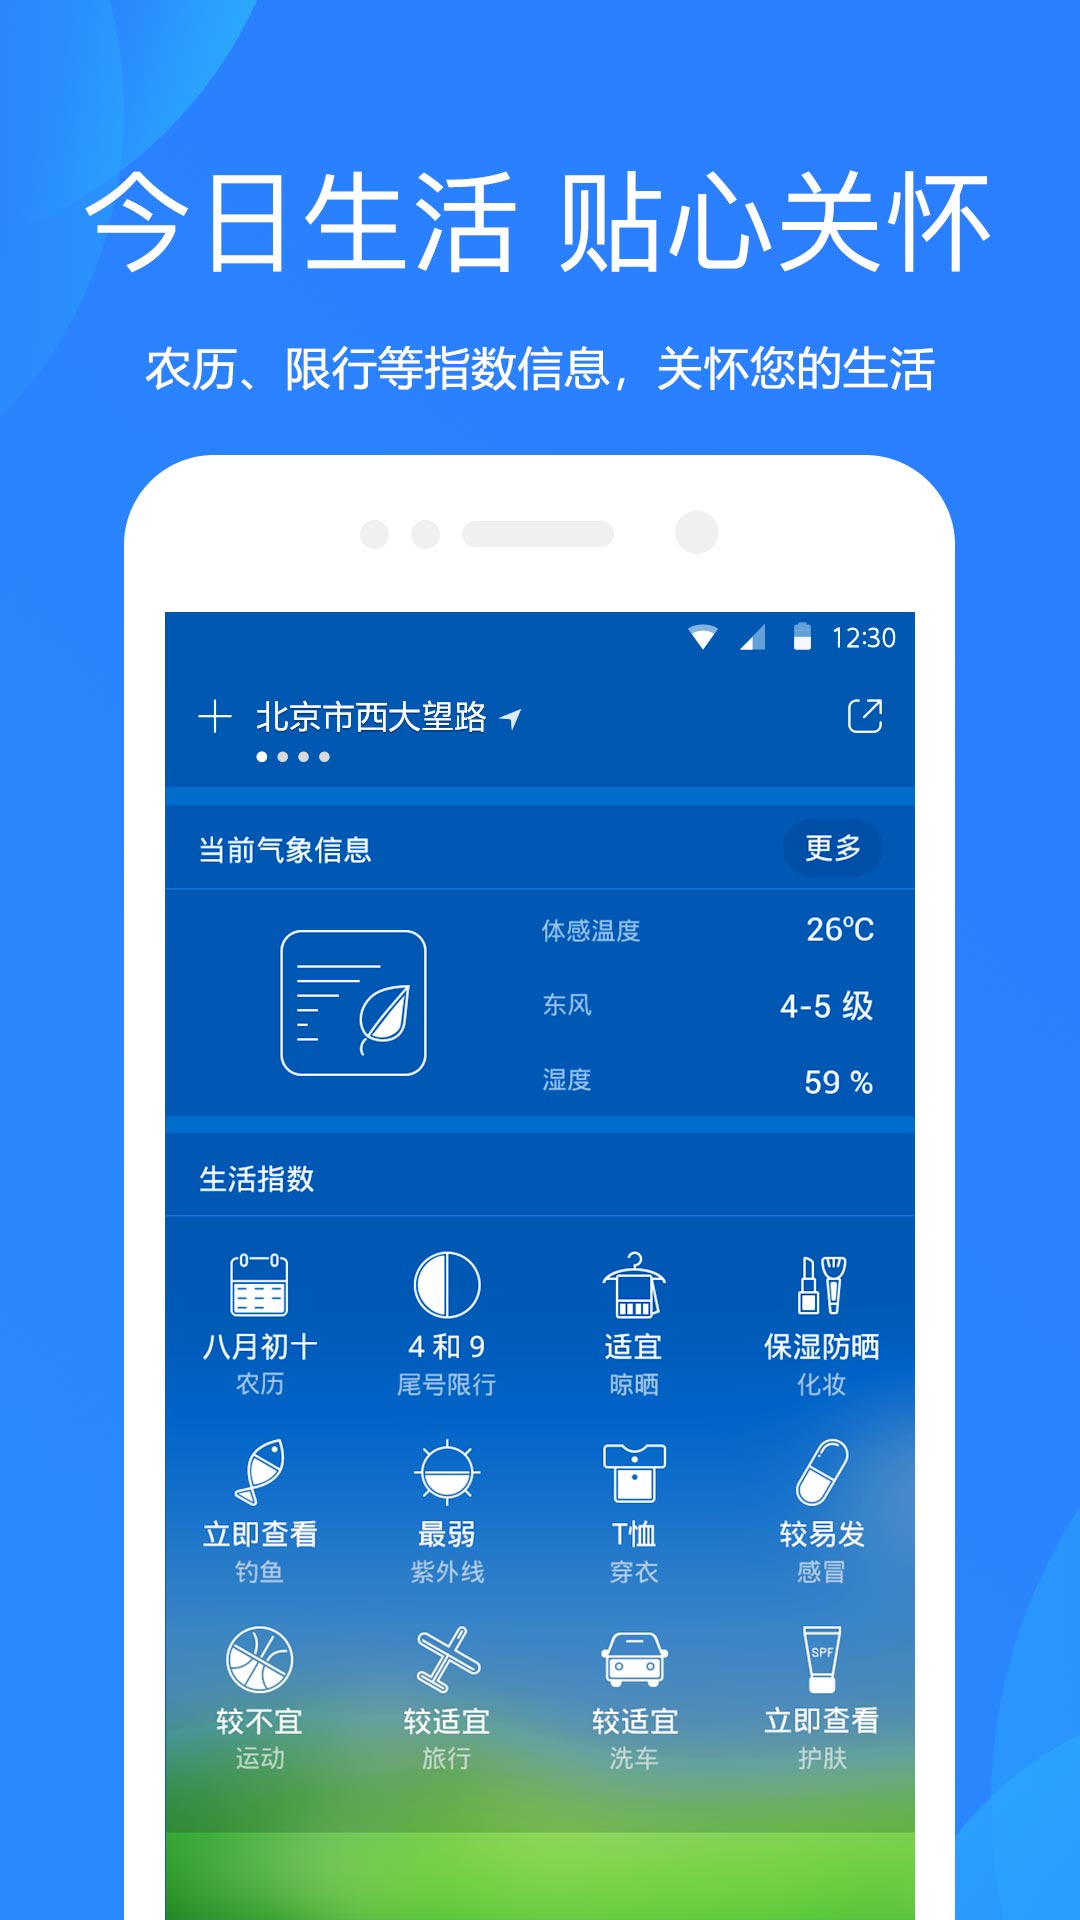 天气预报app下载7.0.1